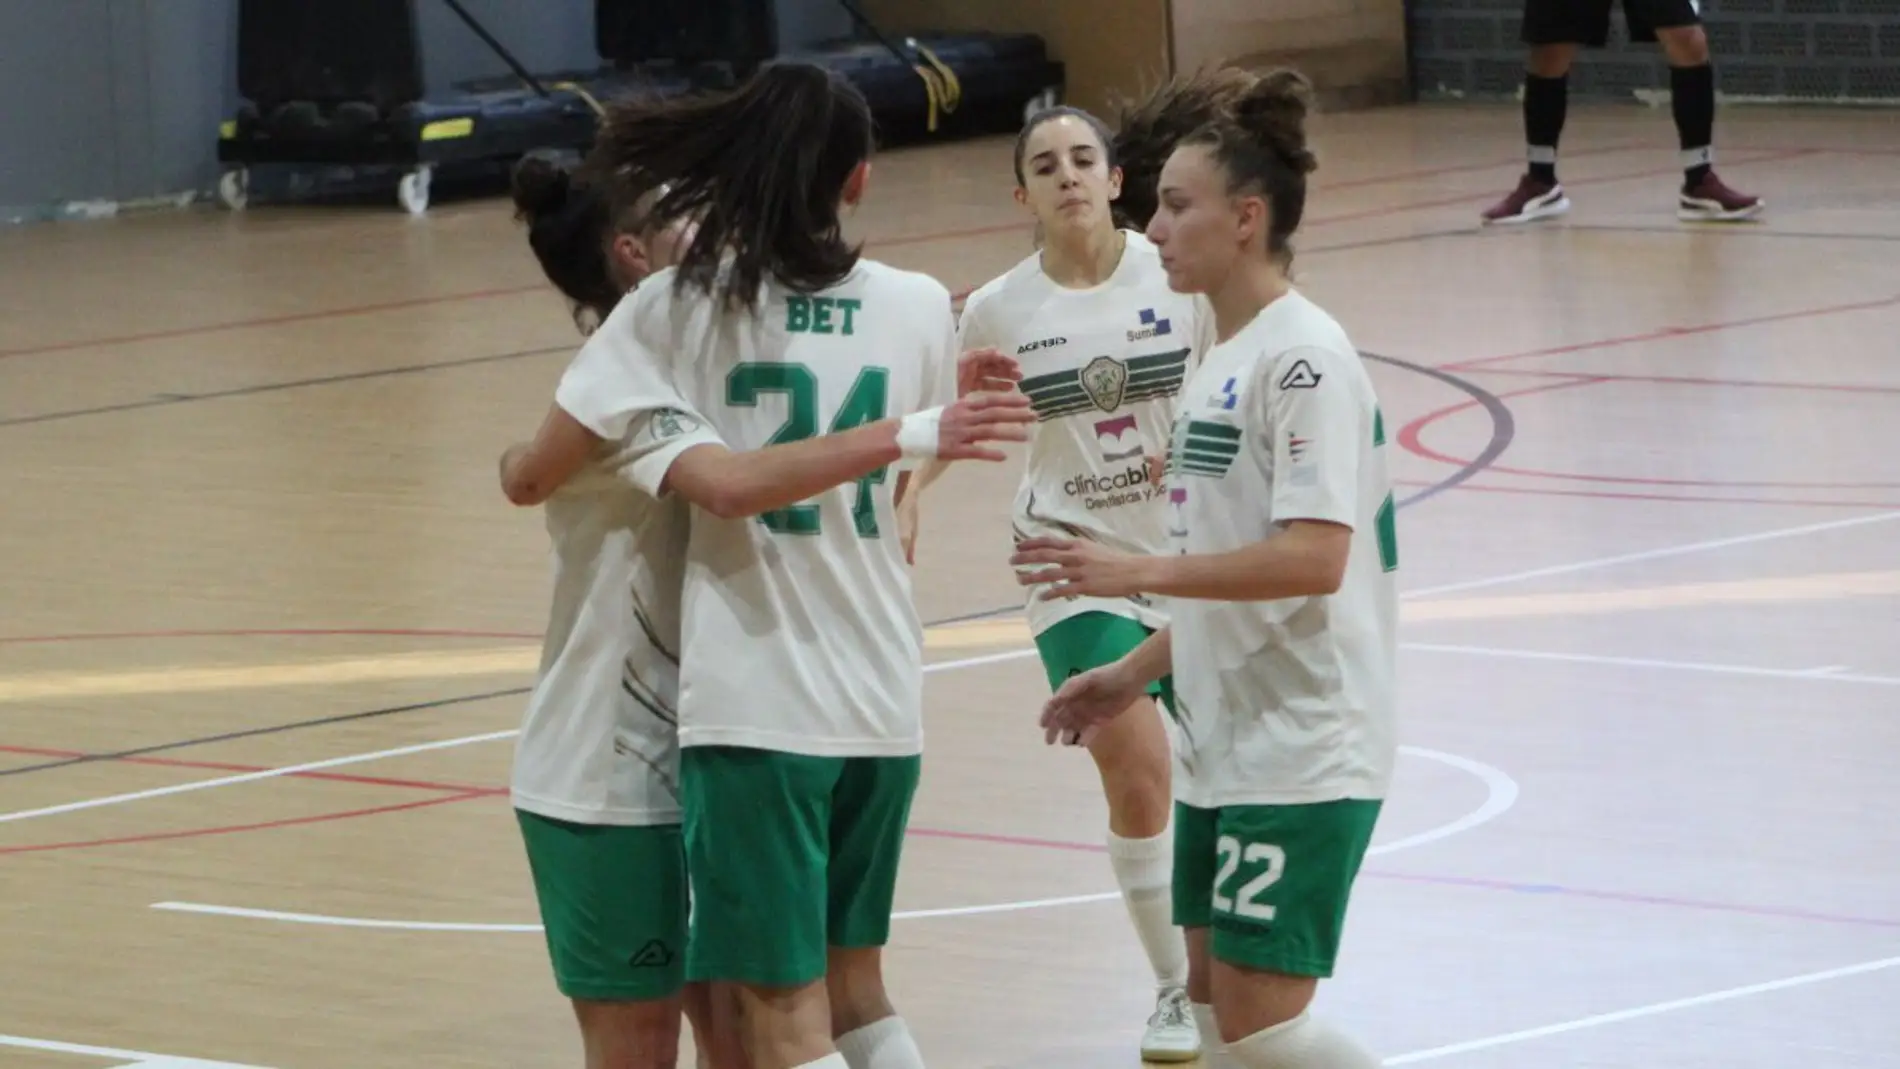 El Joventut d'Elx, uno de los clubes de fútbol sala femenino más importantes de la provincia.